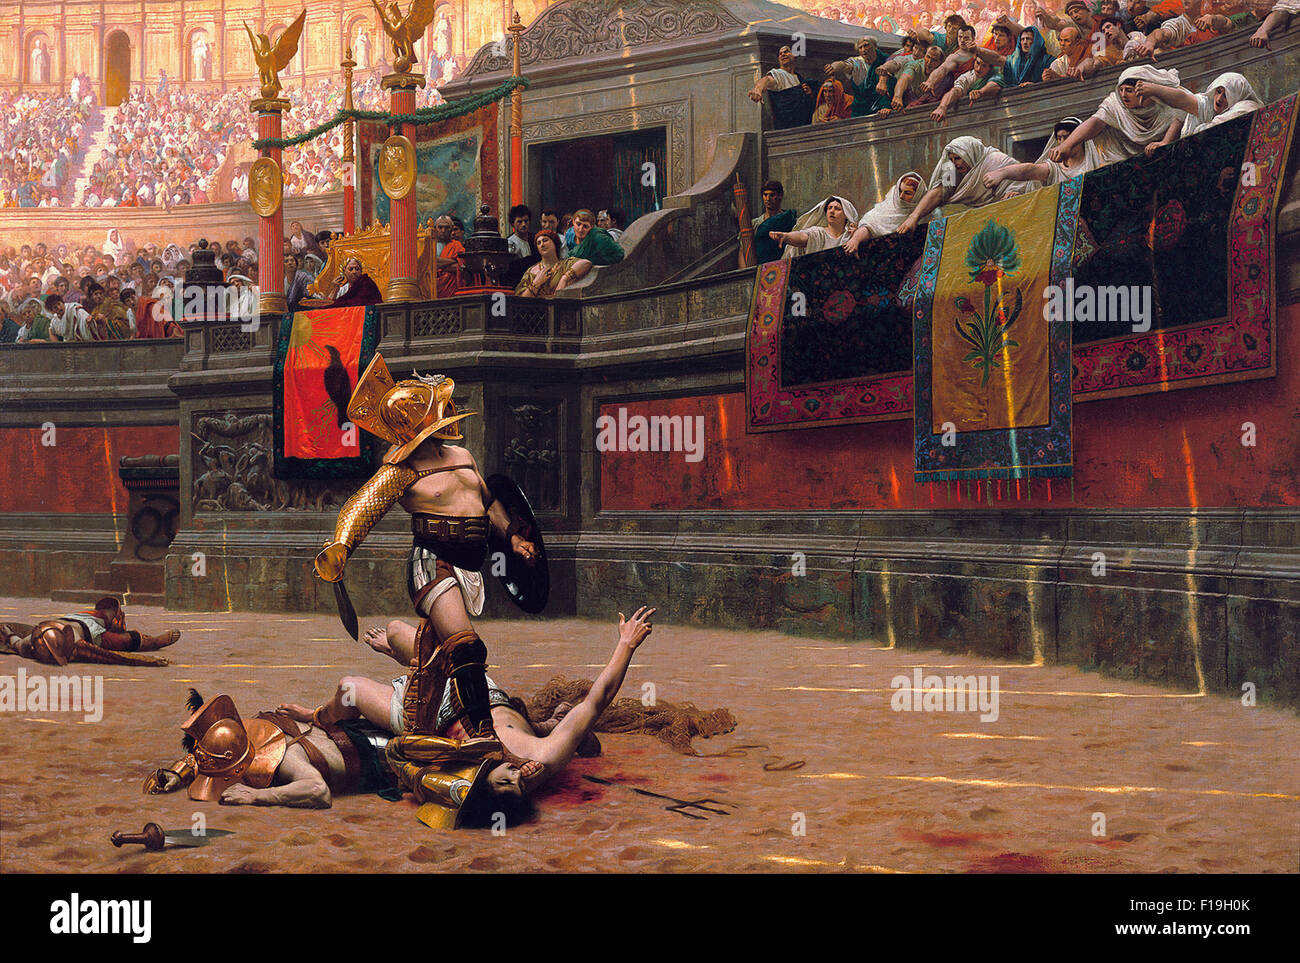 Pollice verso (1872), que popularizó el 'Thumbs Down' gesto. Óleo sobre lienzo. Un emperador romano en el Coliseo, hace que el famoso gesto pulgar hacia abajo. Pintura del artista Jean-Léon Gérôme. Foto de stock